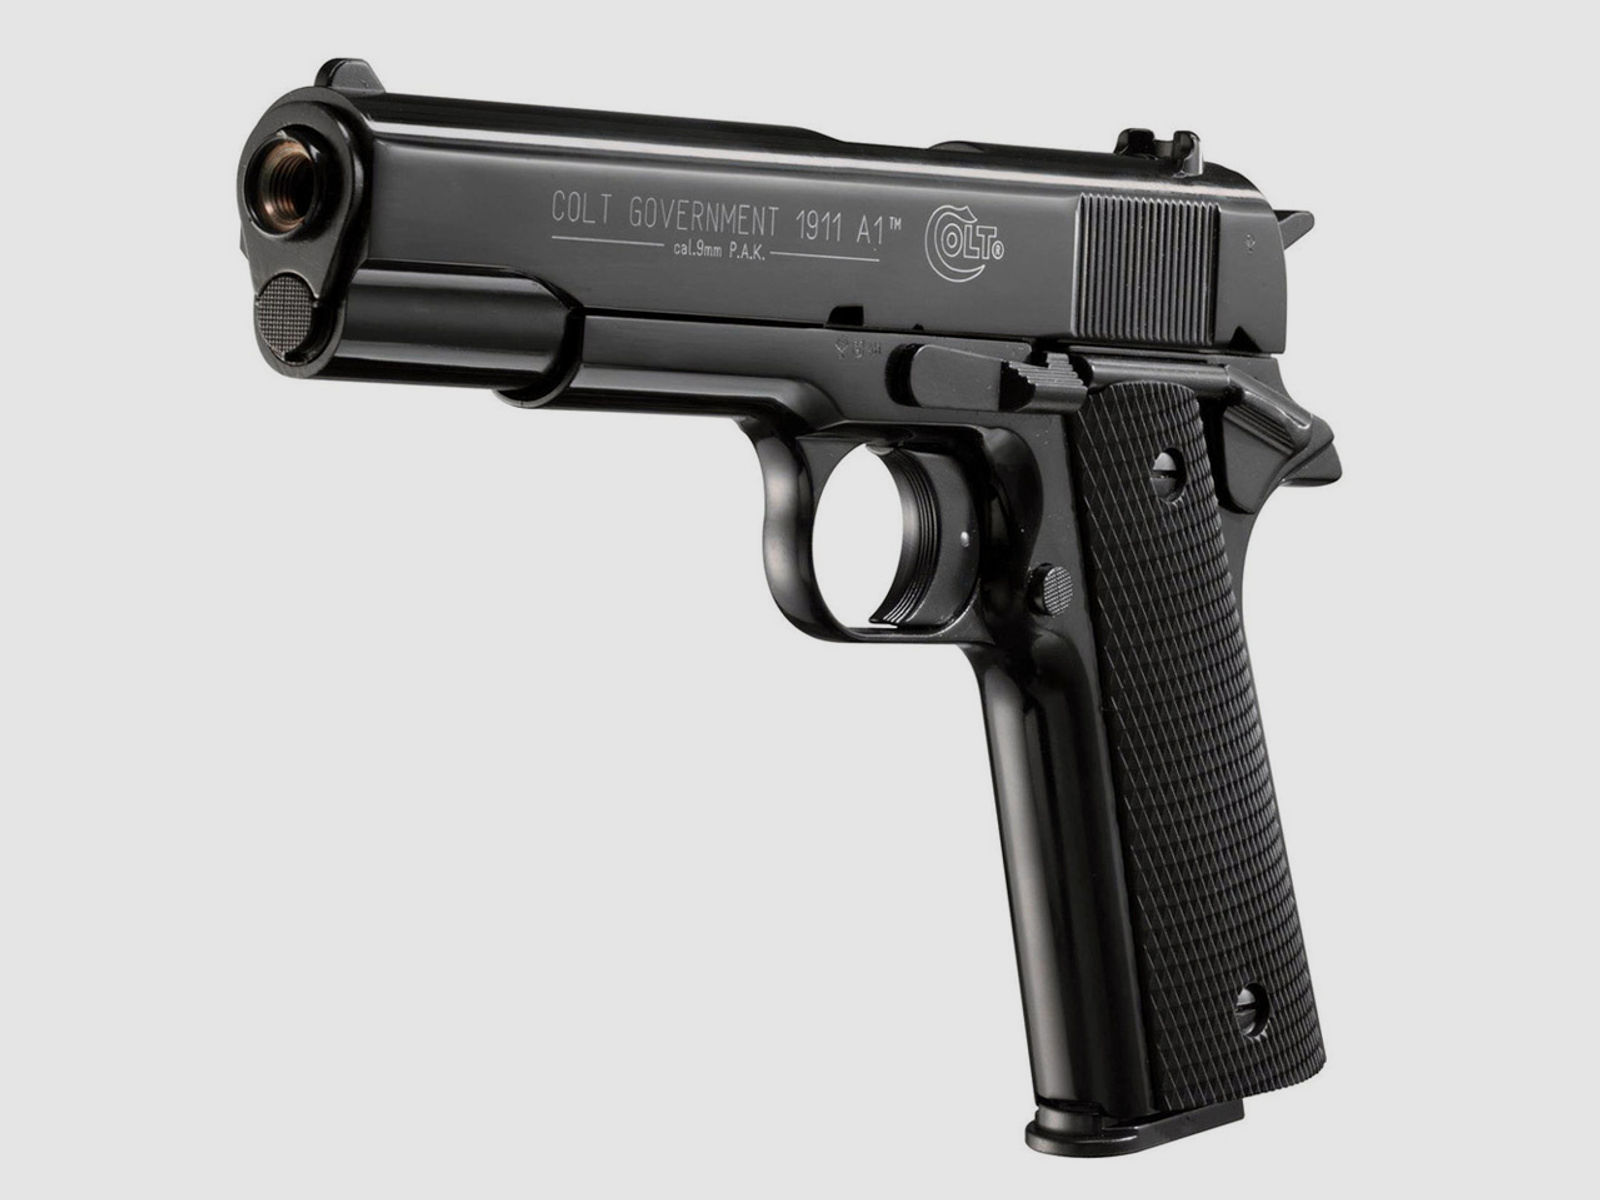 Schreckschuss Pistole Colt Government 1911 A1 schwarz Kaliber 9 mm P.A.K. (P18) + Universalholster